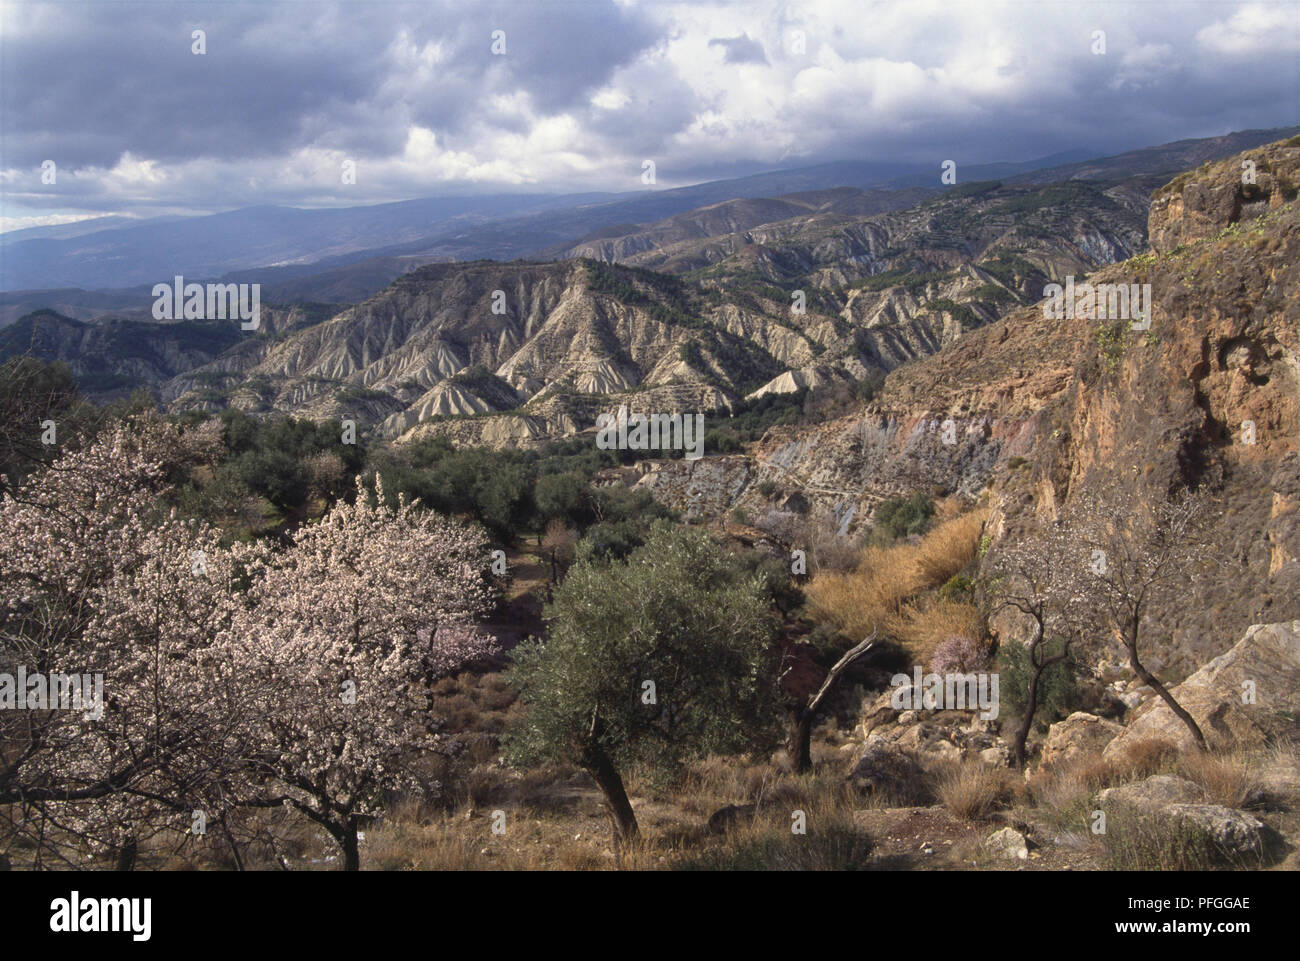 Spanien, Andalusien, Granada, Sierra Nevada von Peak gesehen. Stockfoto